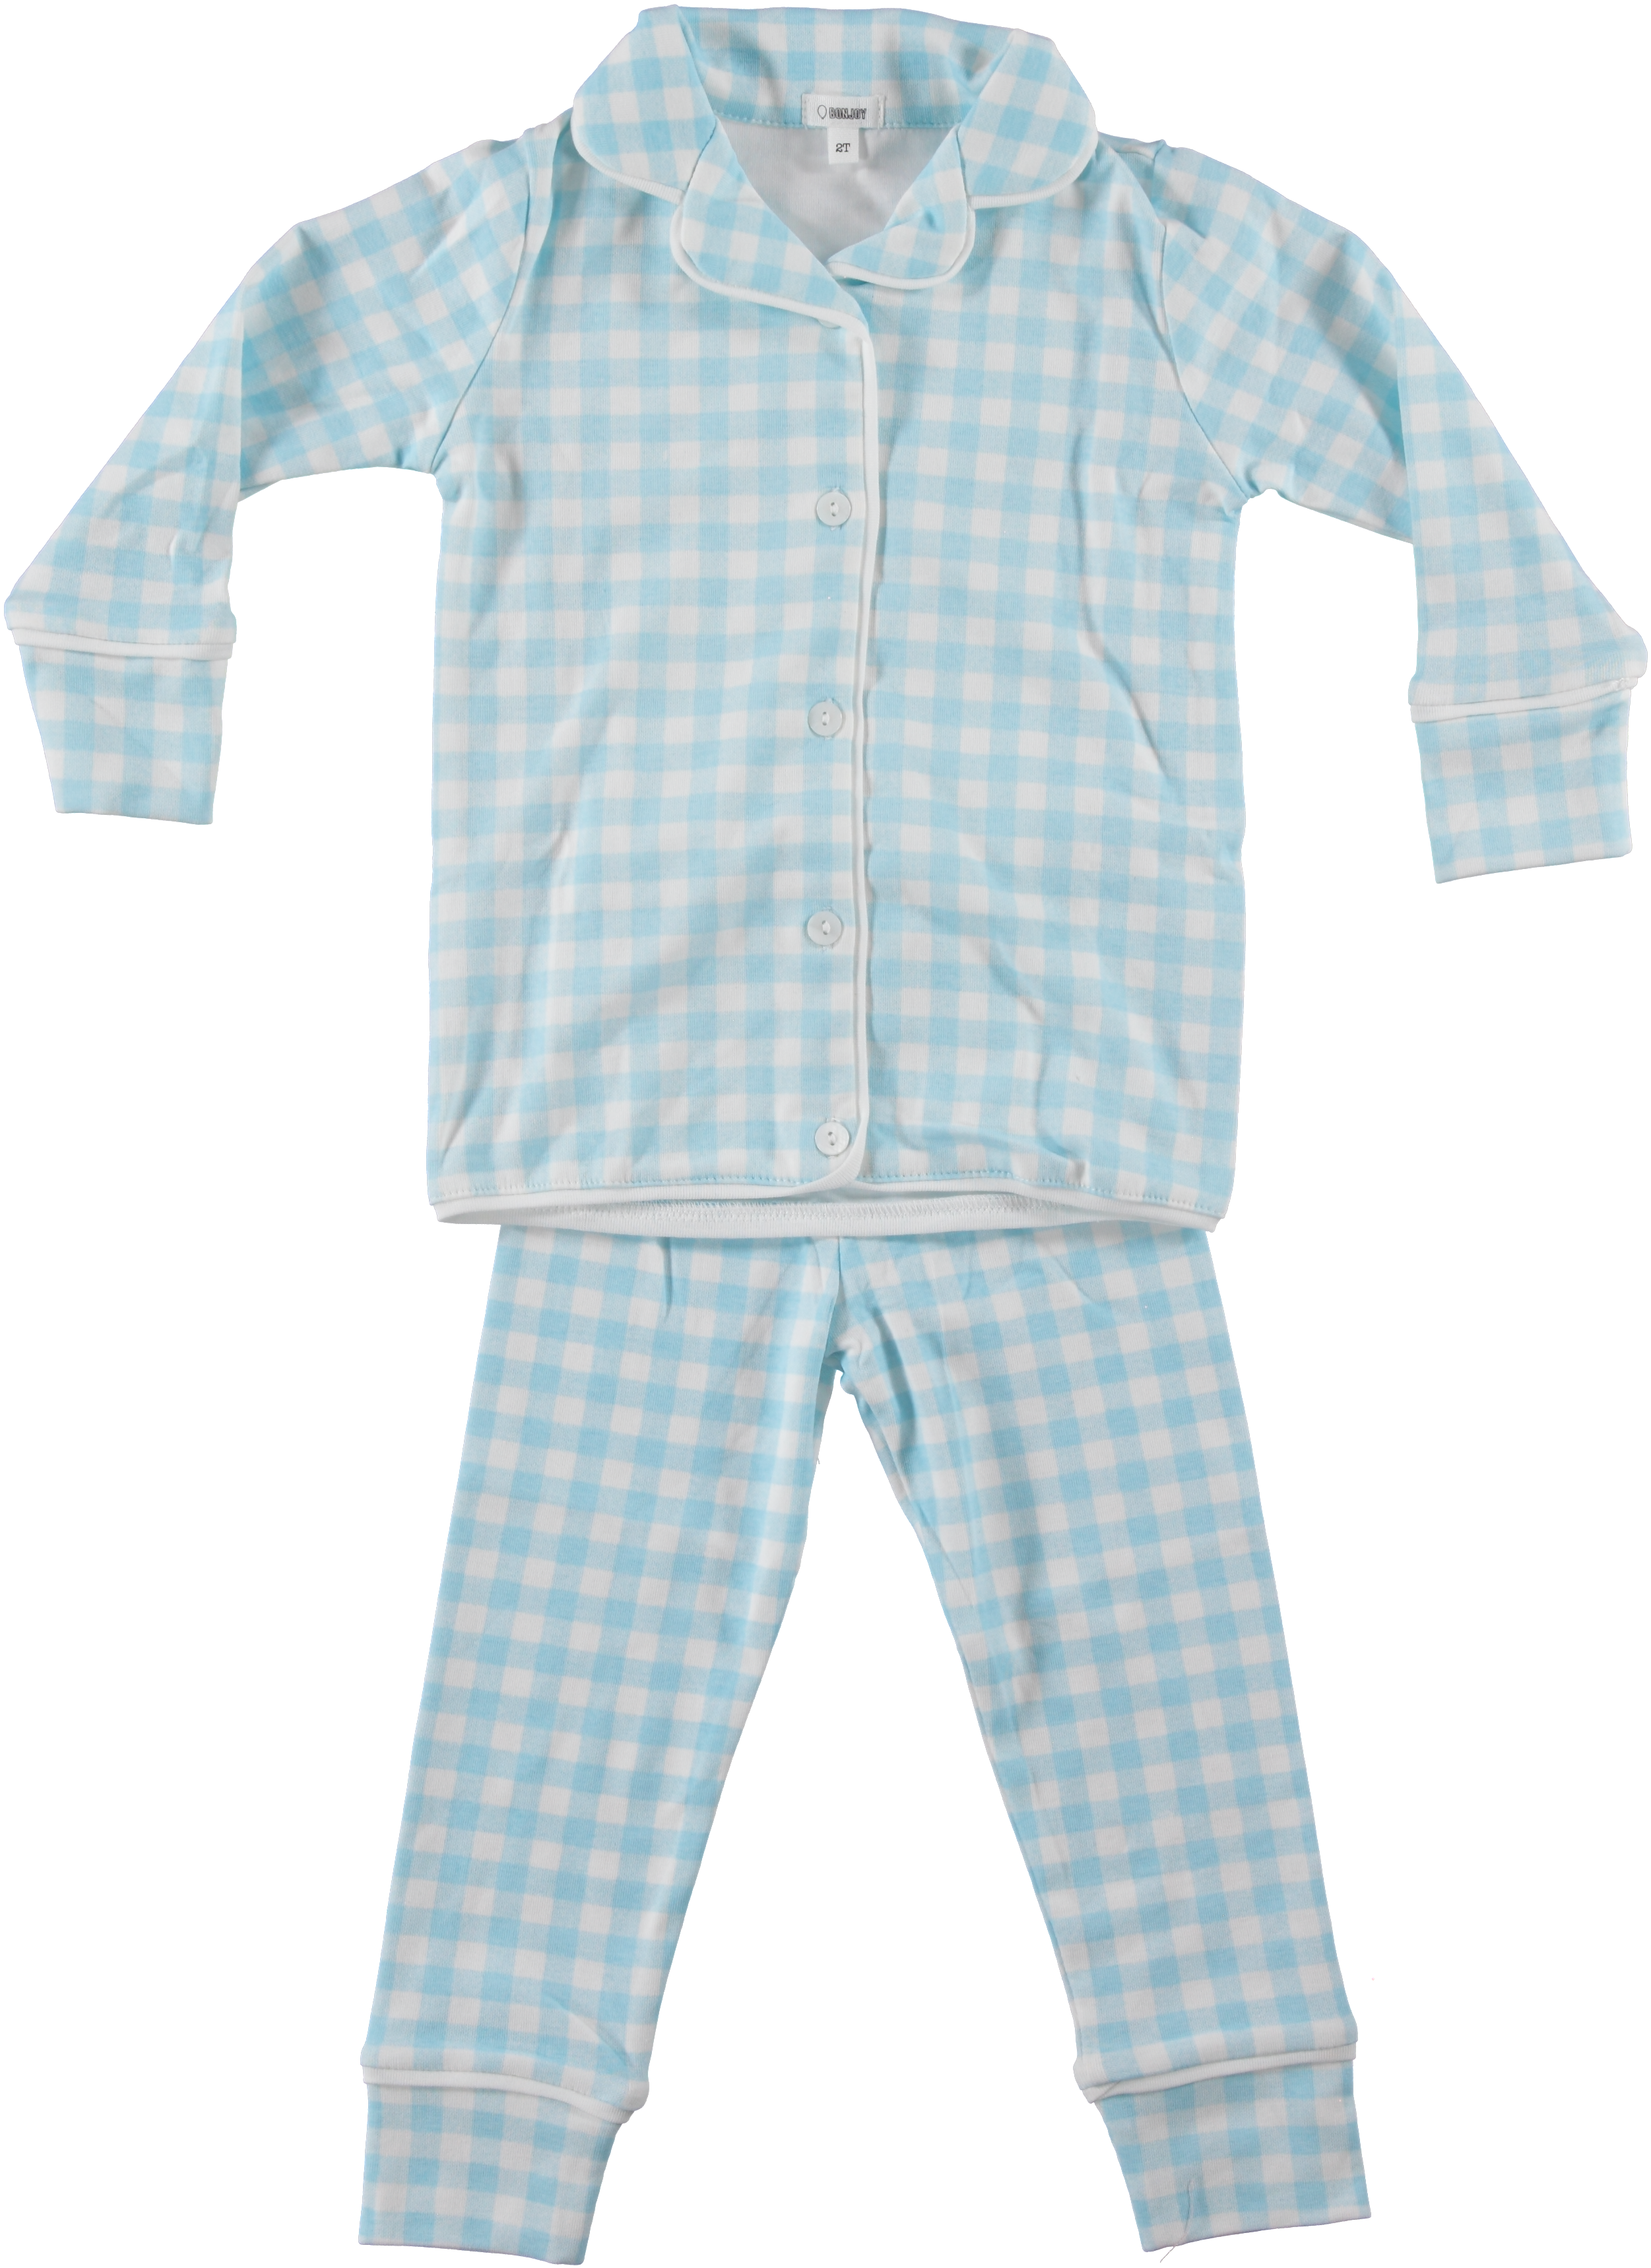 Light Blue Gingham Grandpa Pajamas